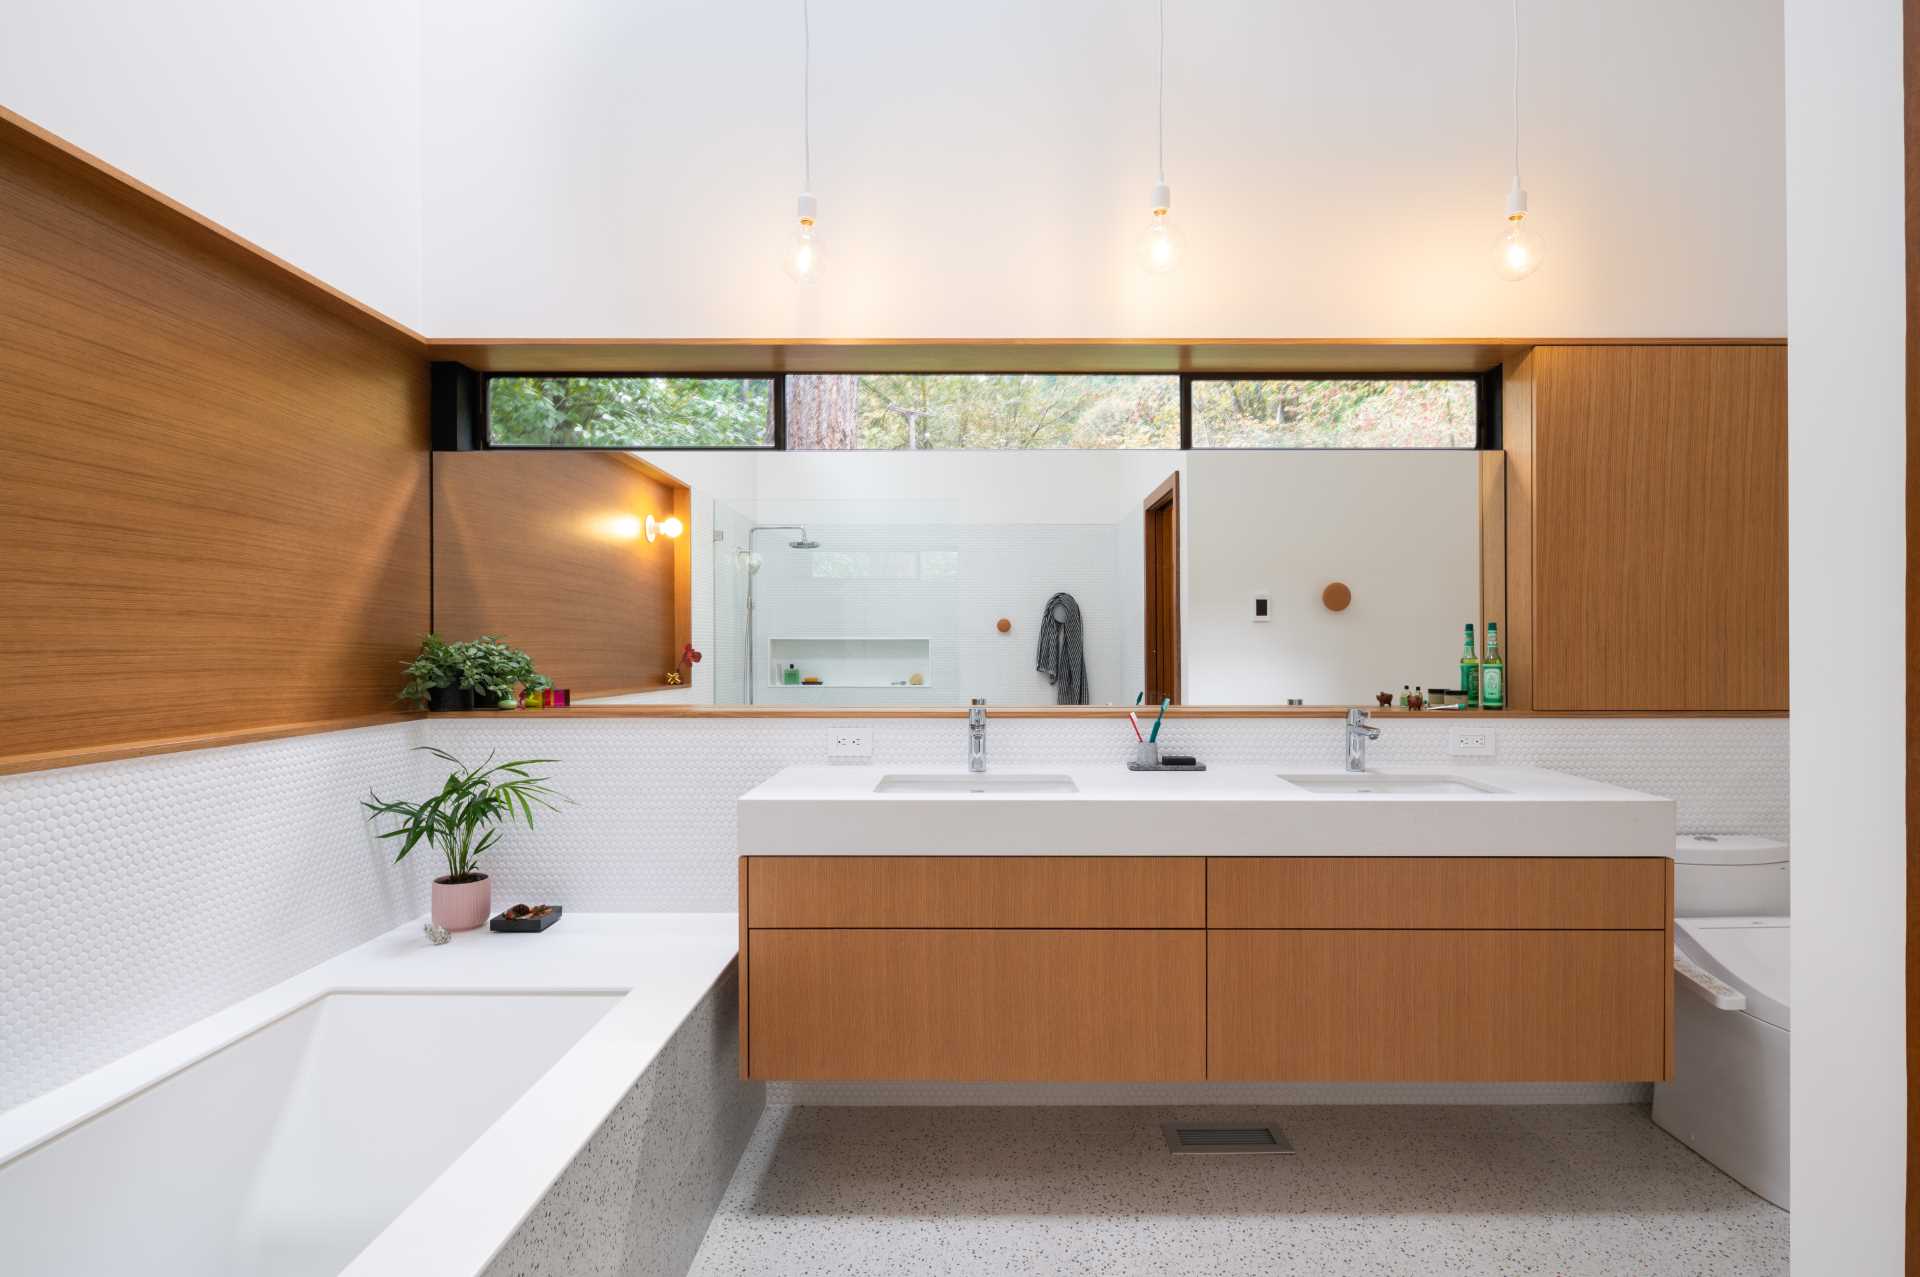 یک حمام مدرن با دیوارهای پوشیده از کاشی‌های پنی سفید، یک وان حمام توکار، دوش با طاقچه قفسه‌بندی، و جزئیات چوبی پیچیده‌شده برای تطبیق با روشویی دوتایی.